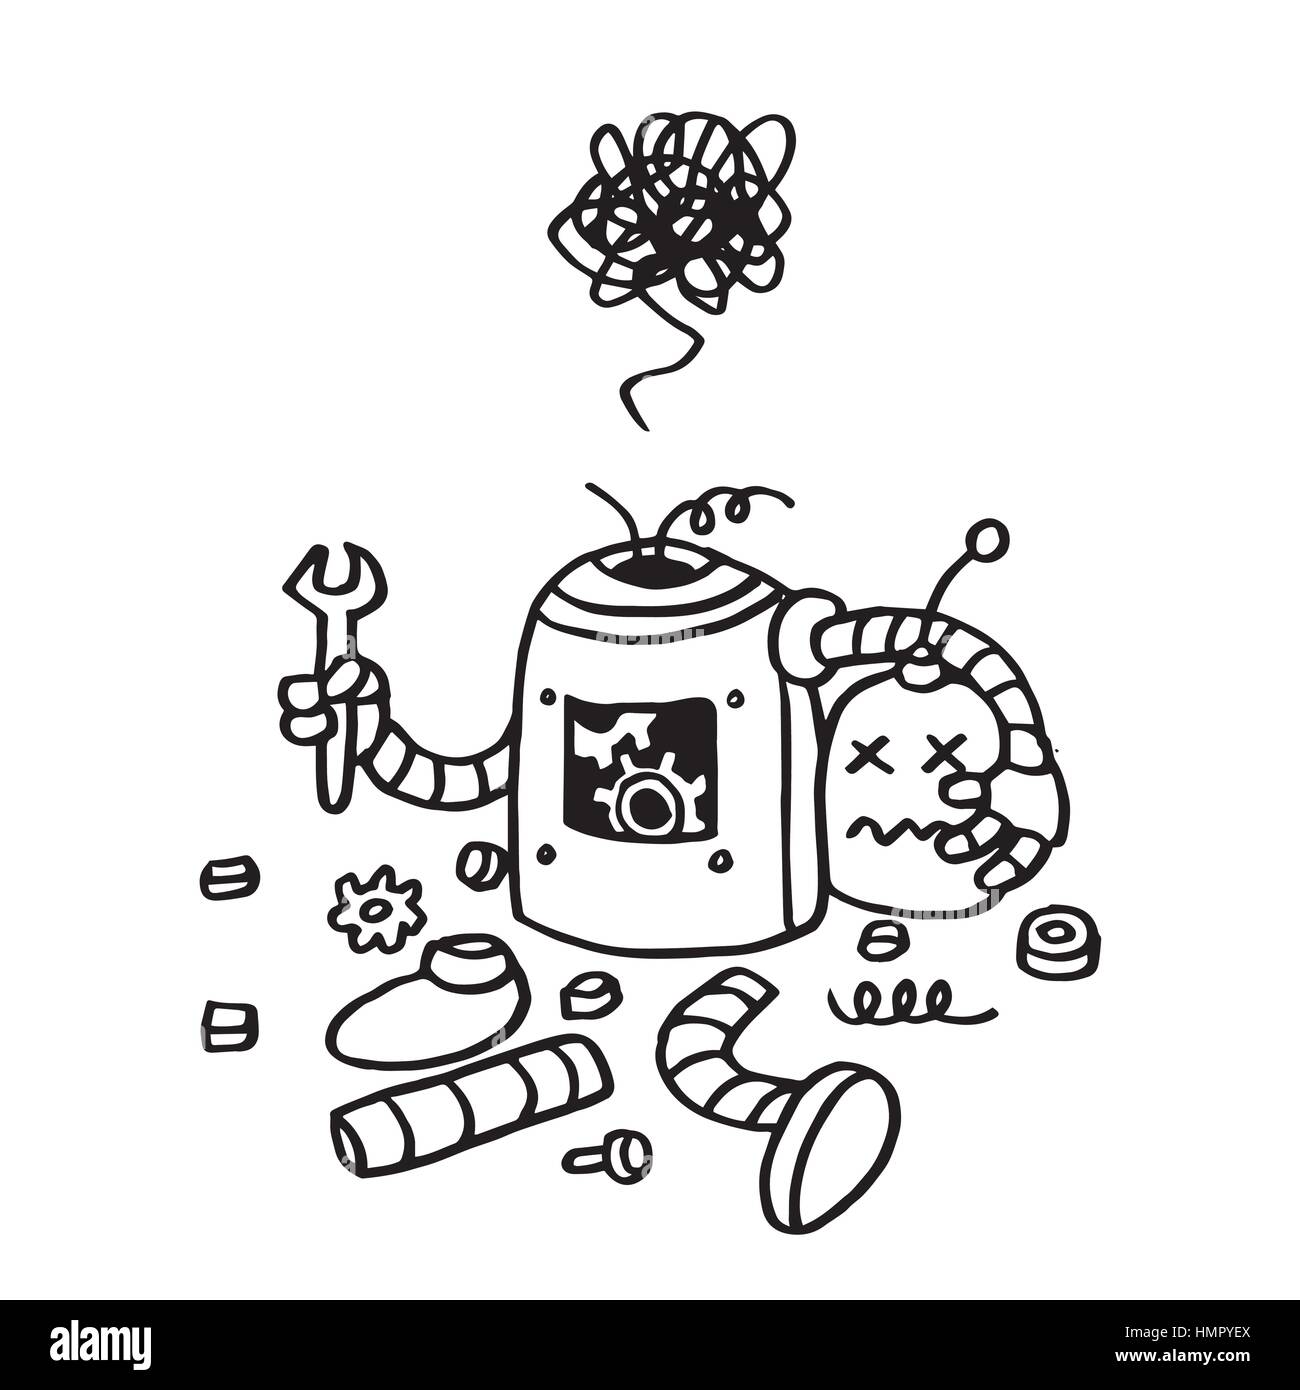 Seite nicht gefunden Fehler 404. Defekte Roboter schwarz-weiß Handsymbol gezeichnete Vektor Vorlage Stock Vektor